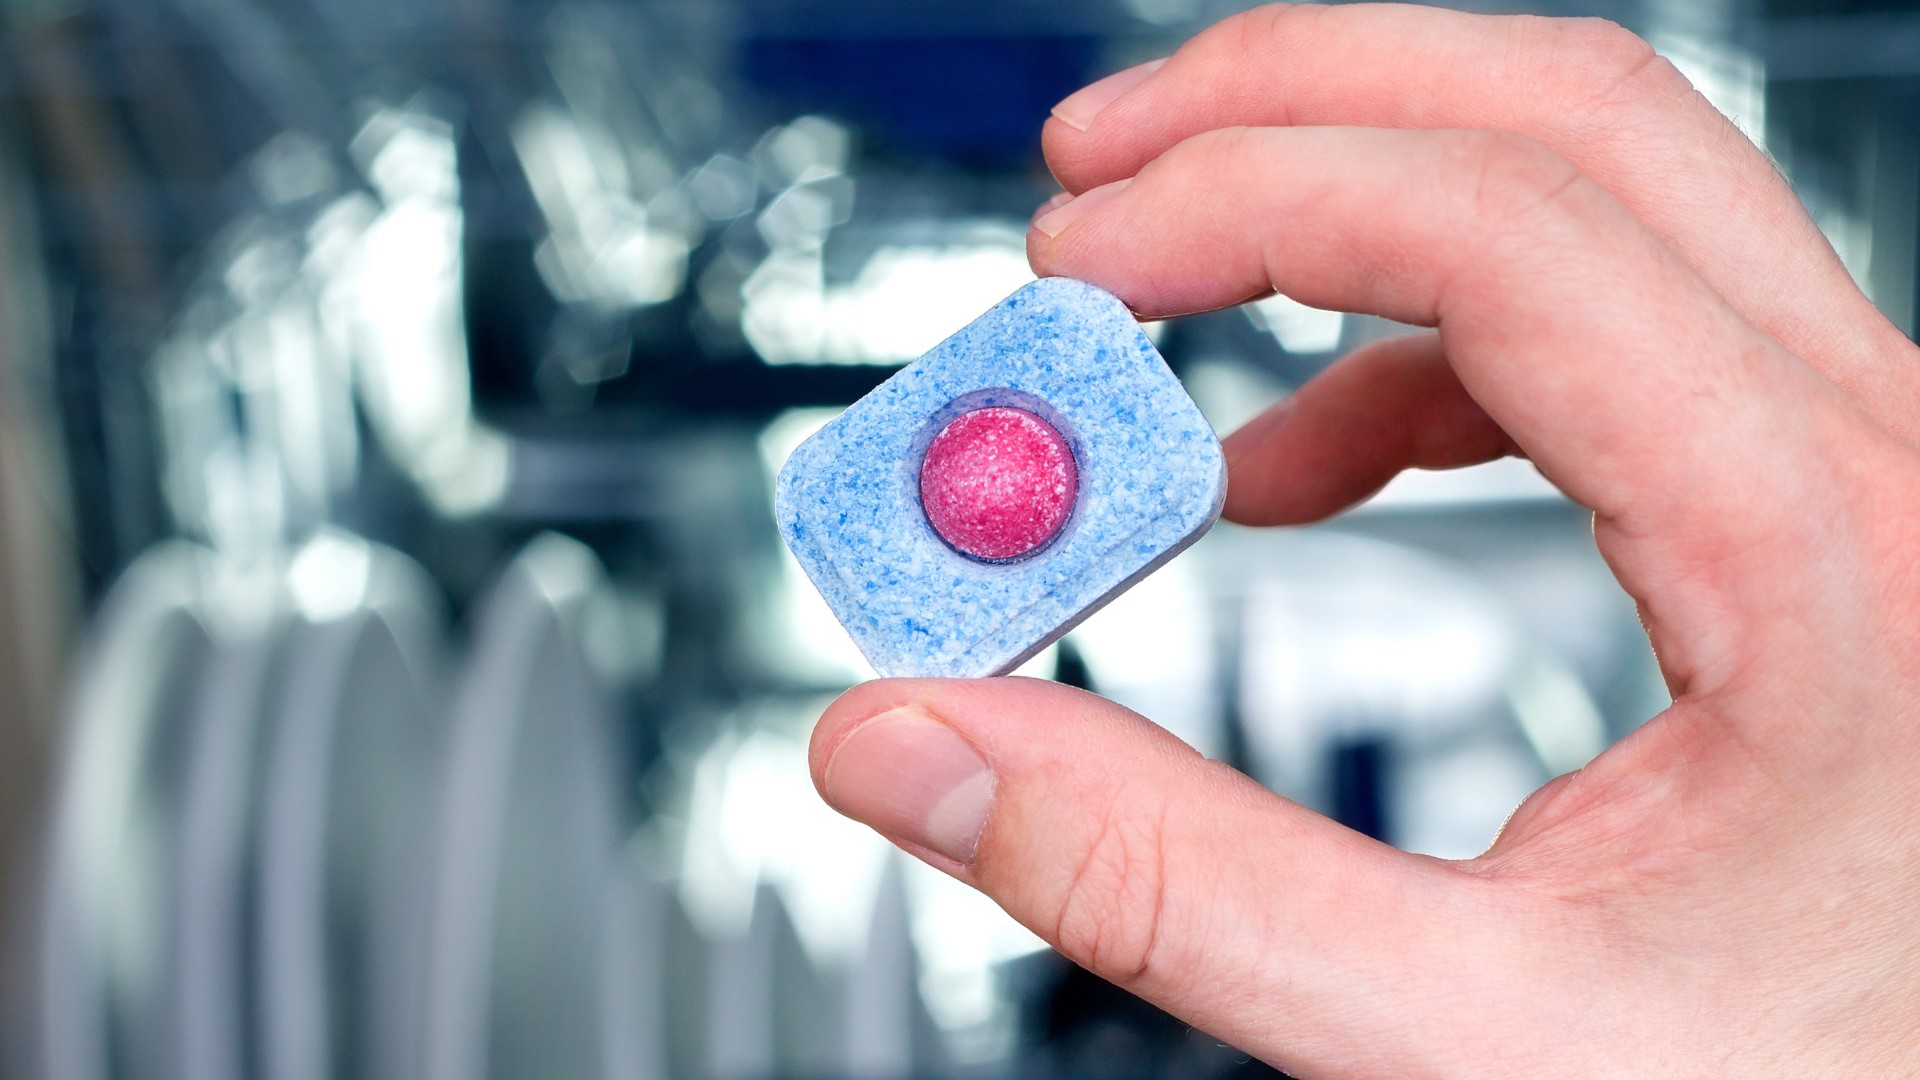 10 Best Dishwasher Detergent Tablets for 2023